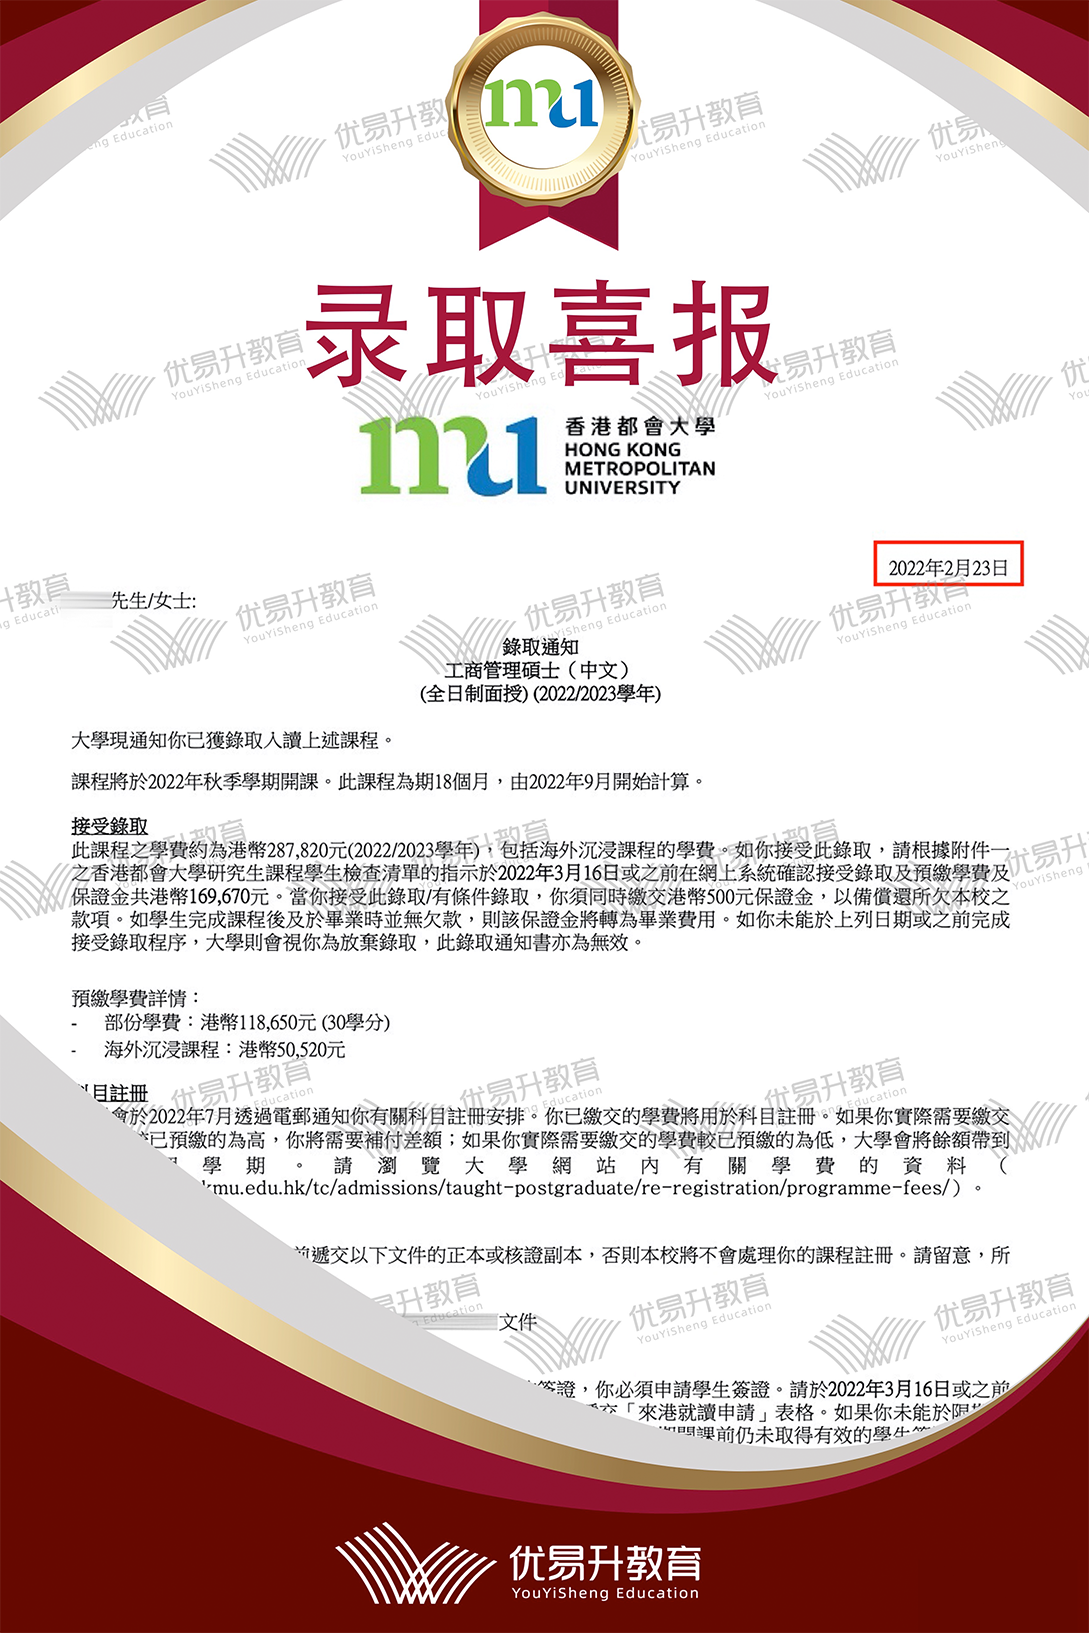 恭喜S同学获得香港都会大学硕士录取通知书.png